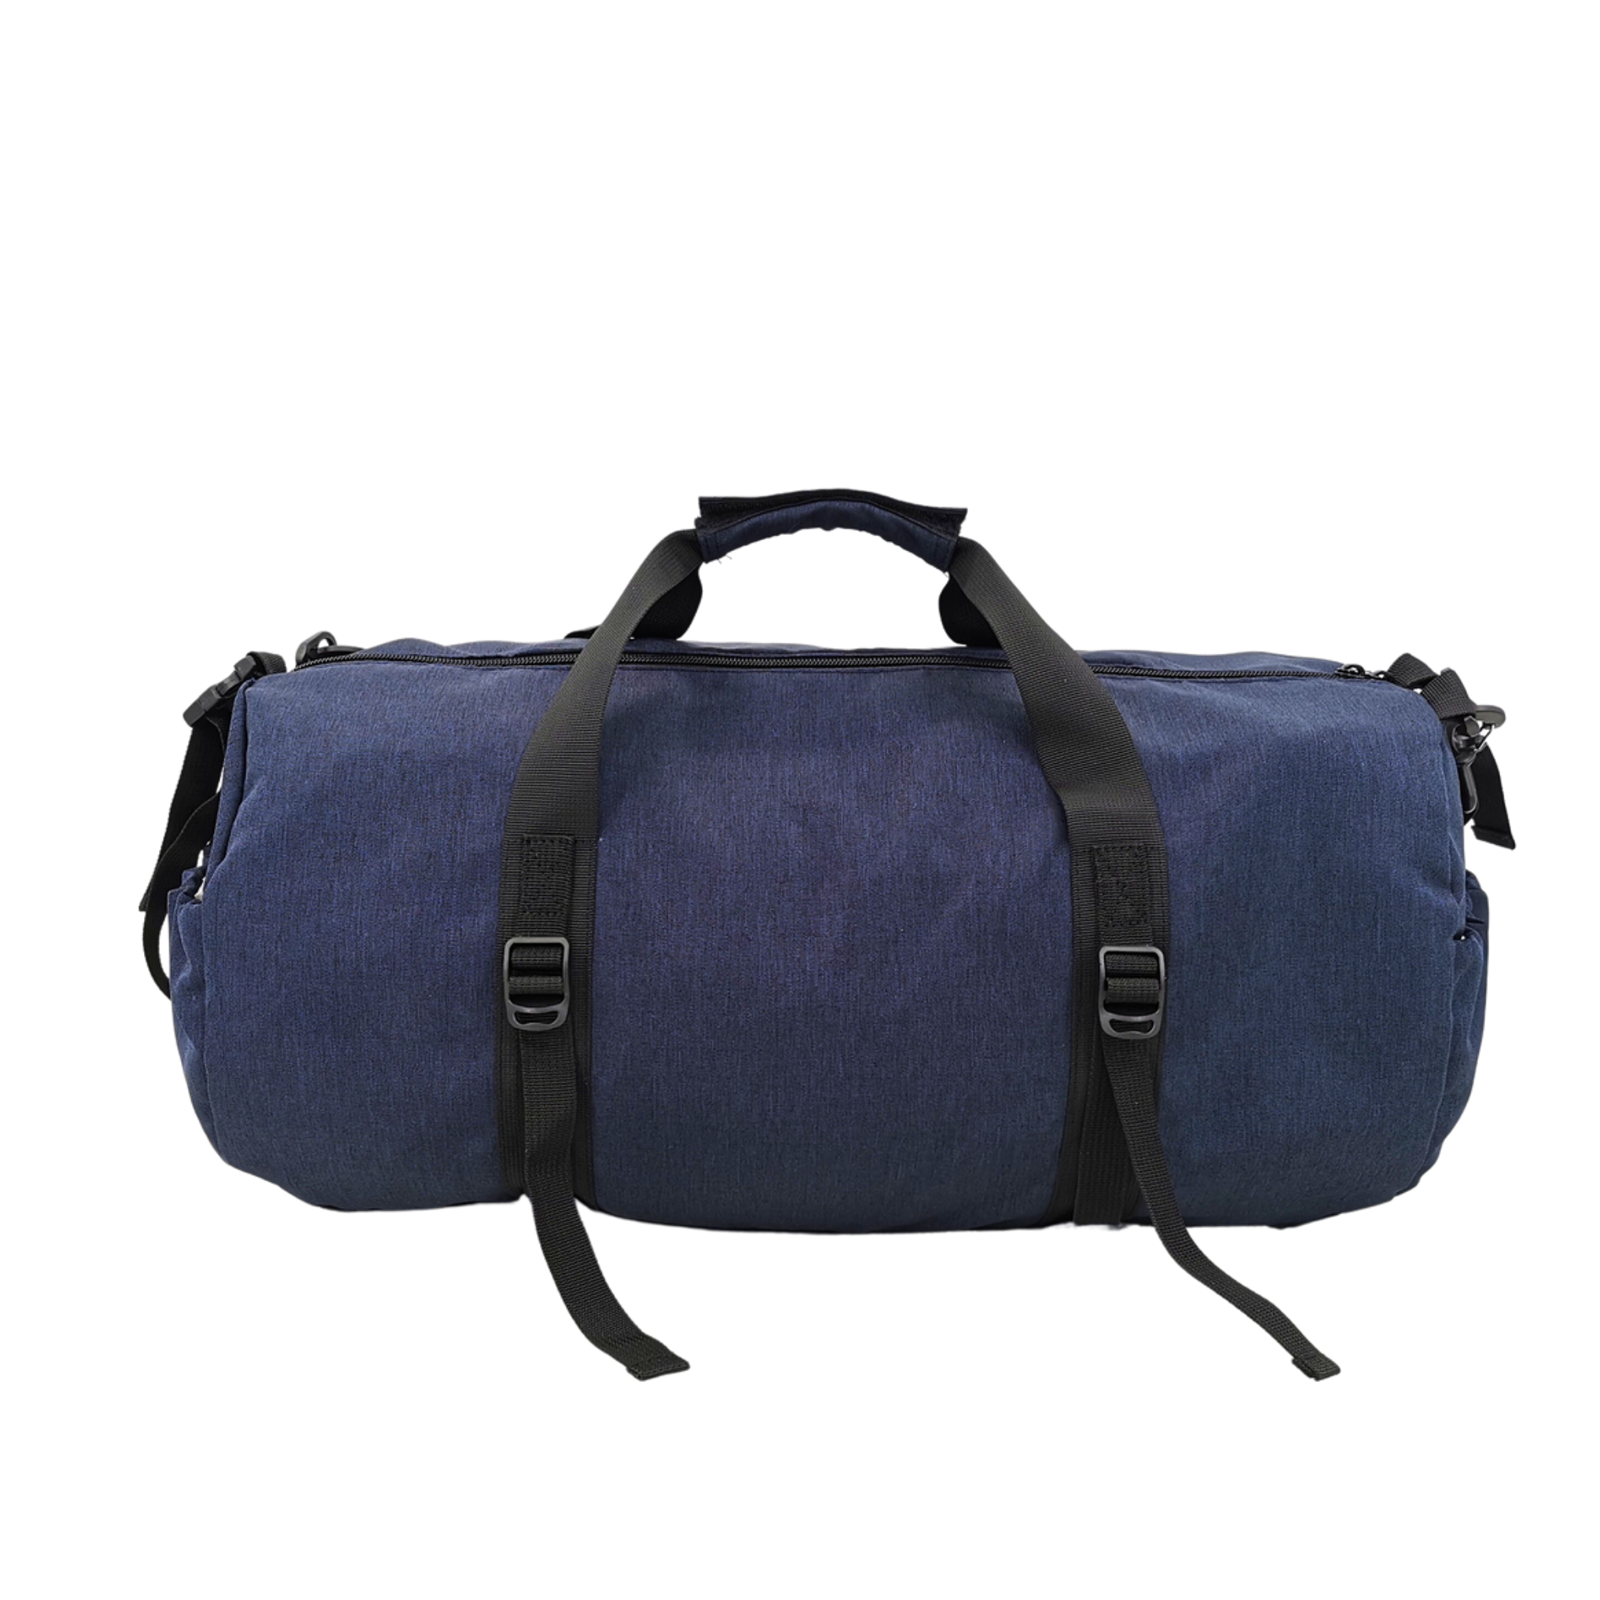 Foldable gym bag – avantote.com